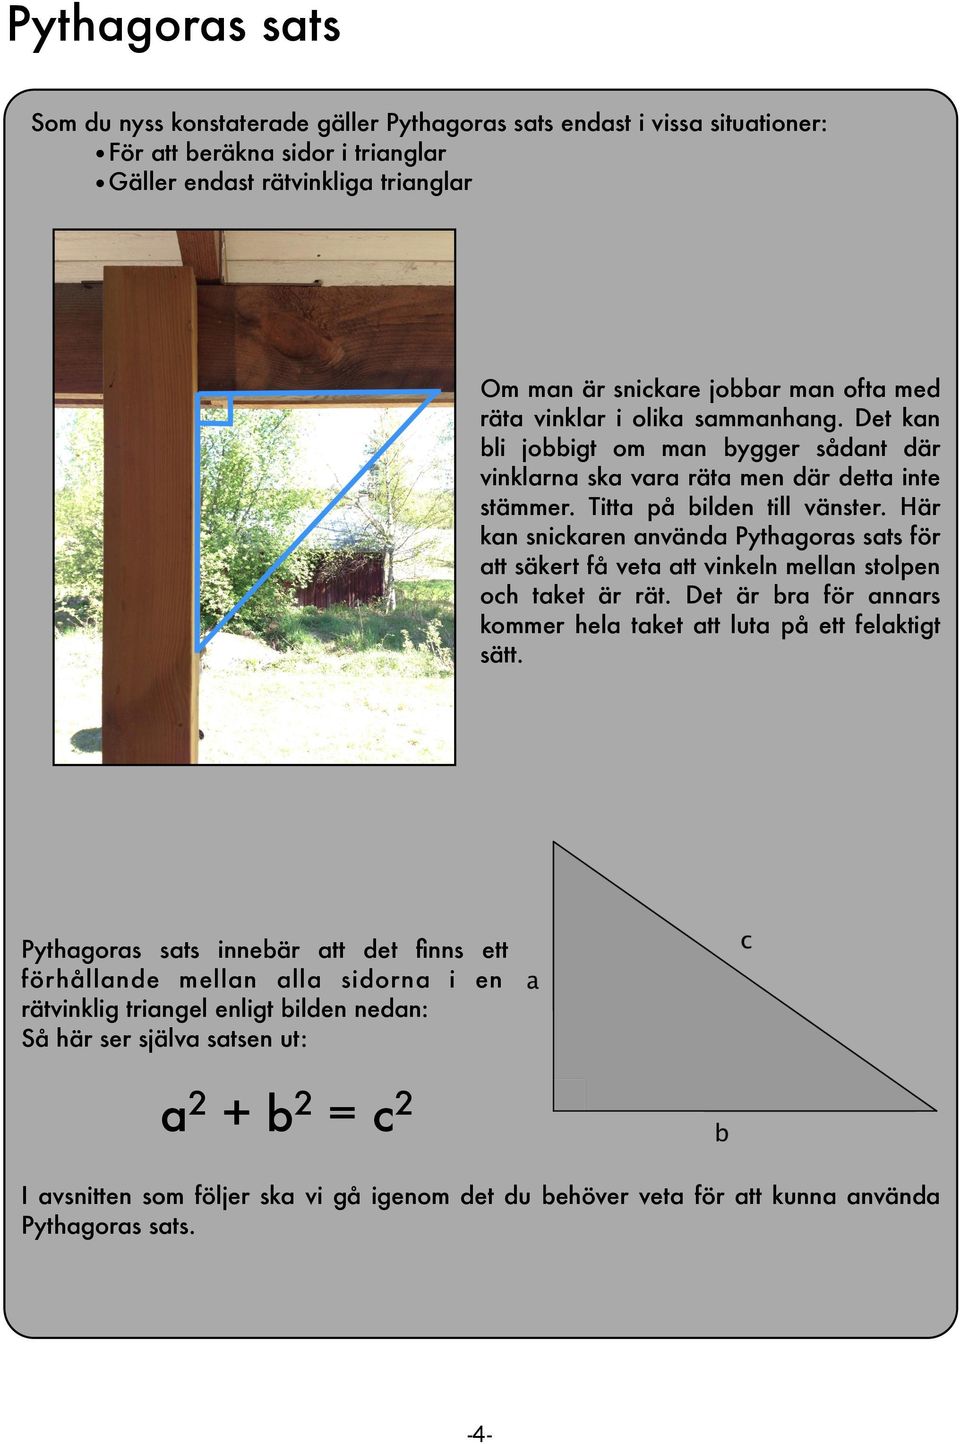 Här kan snickaren använda Pythagoras sats för att säkert få veta att vinkeln mellan stolpen och taket är rät. Det är bra för annars kommer hela taket att luta på ett felaktigt sätt.